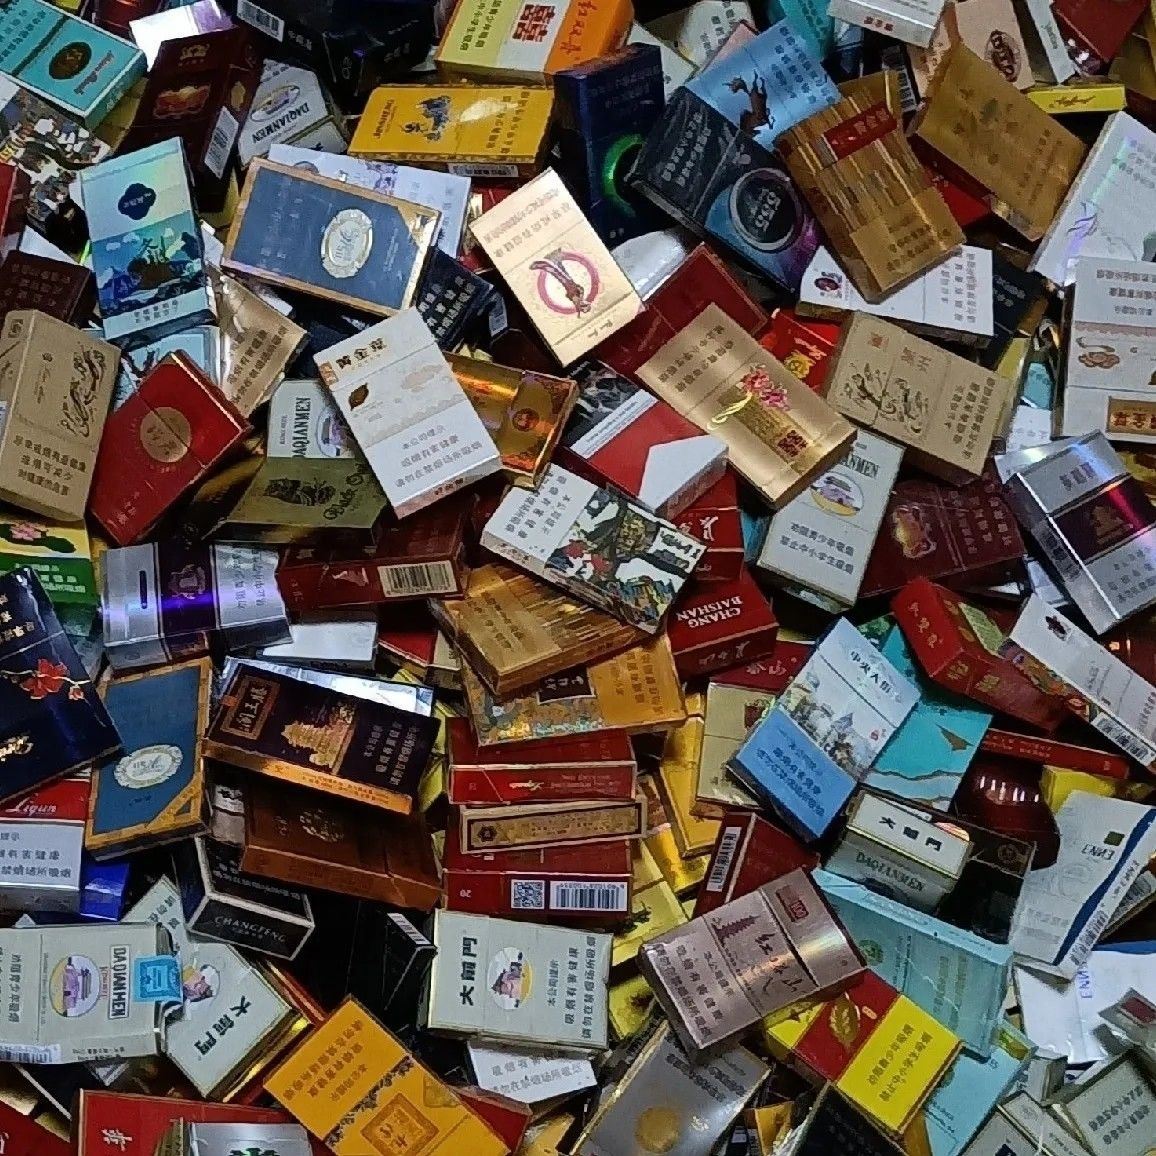 空盒烟盒收藏30种不同硬盒随机发有精品,可做呸呸卡经典道具模型